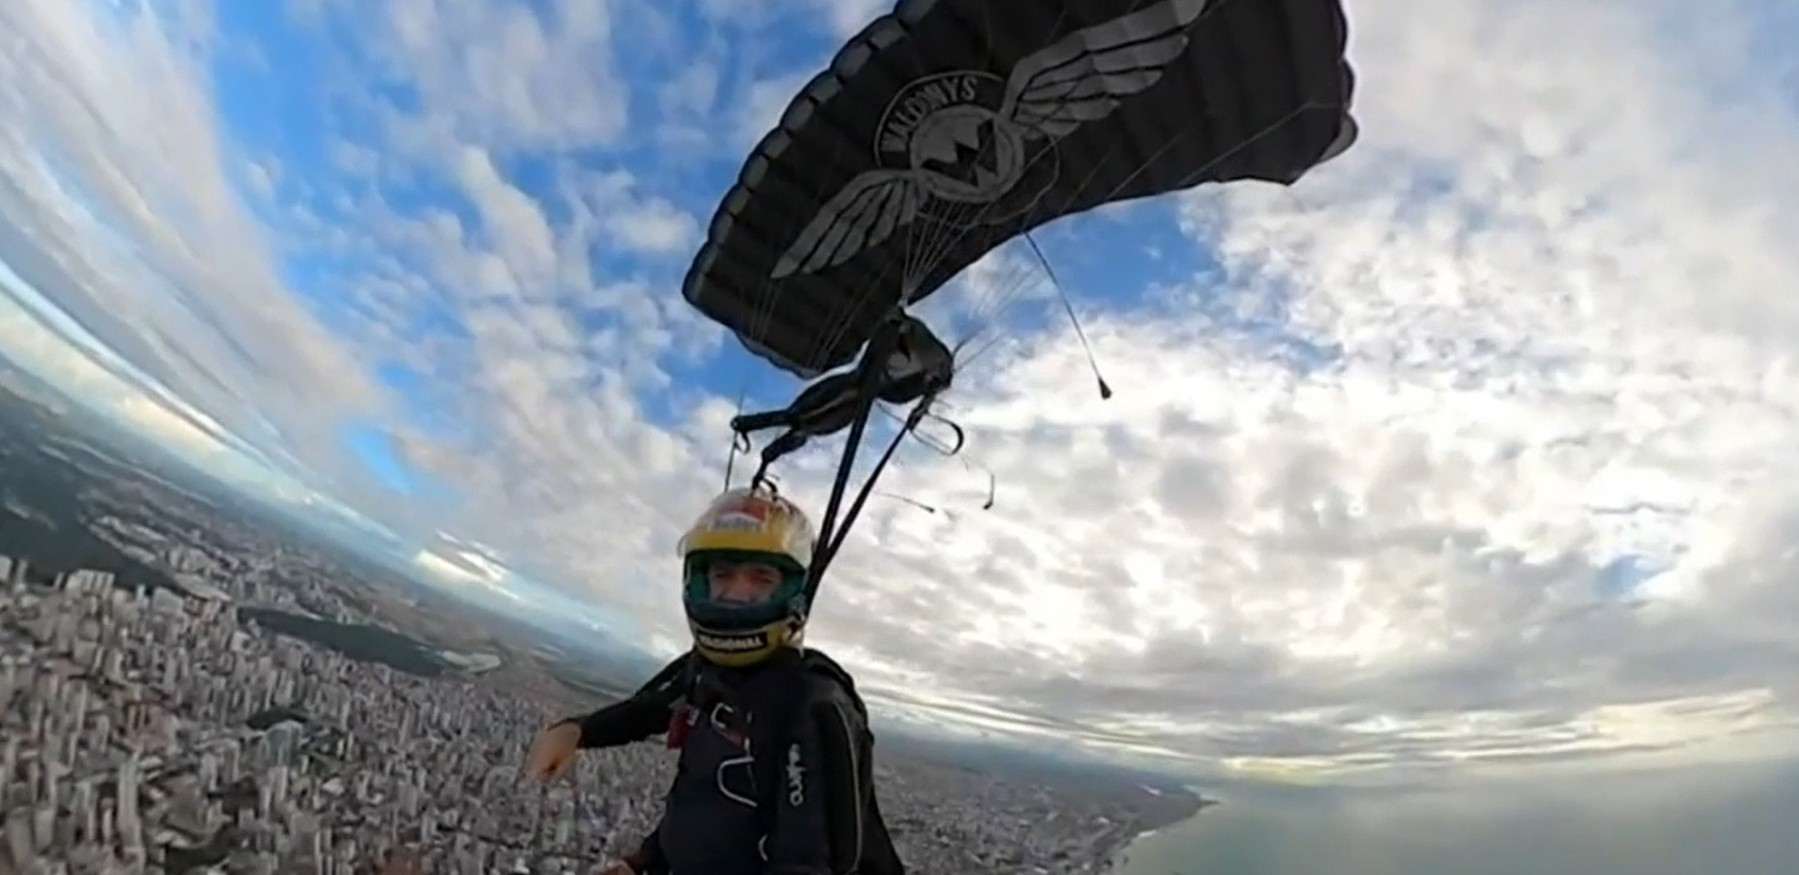 Waldonys pula de paraquedas de helicóptero que pertenceu a Ayrton Senna; vídeo